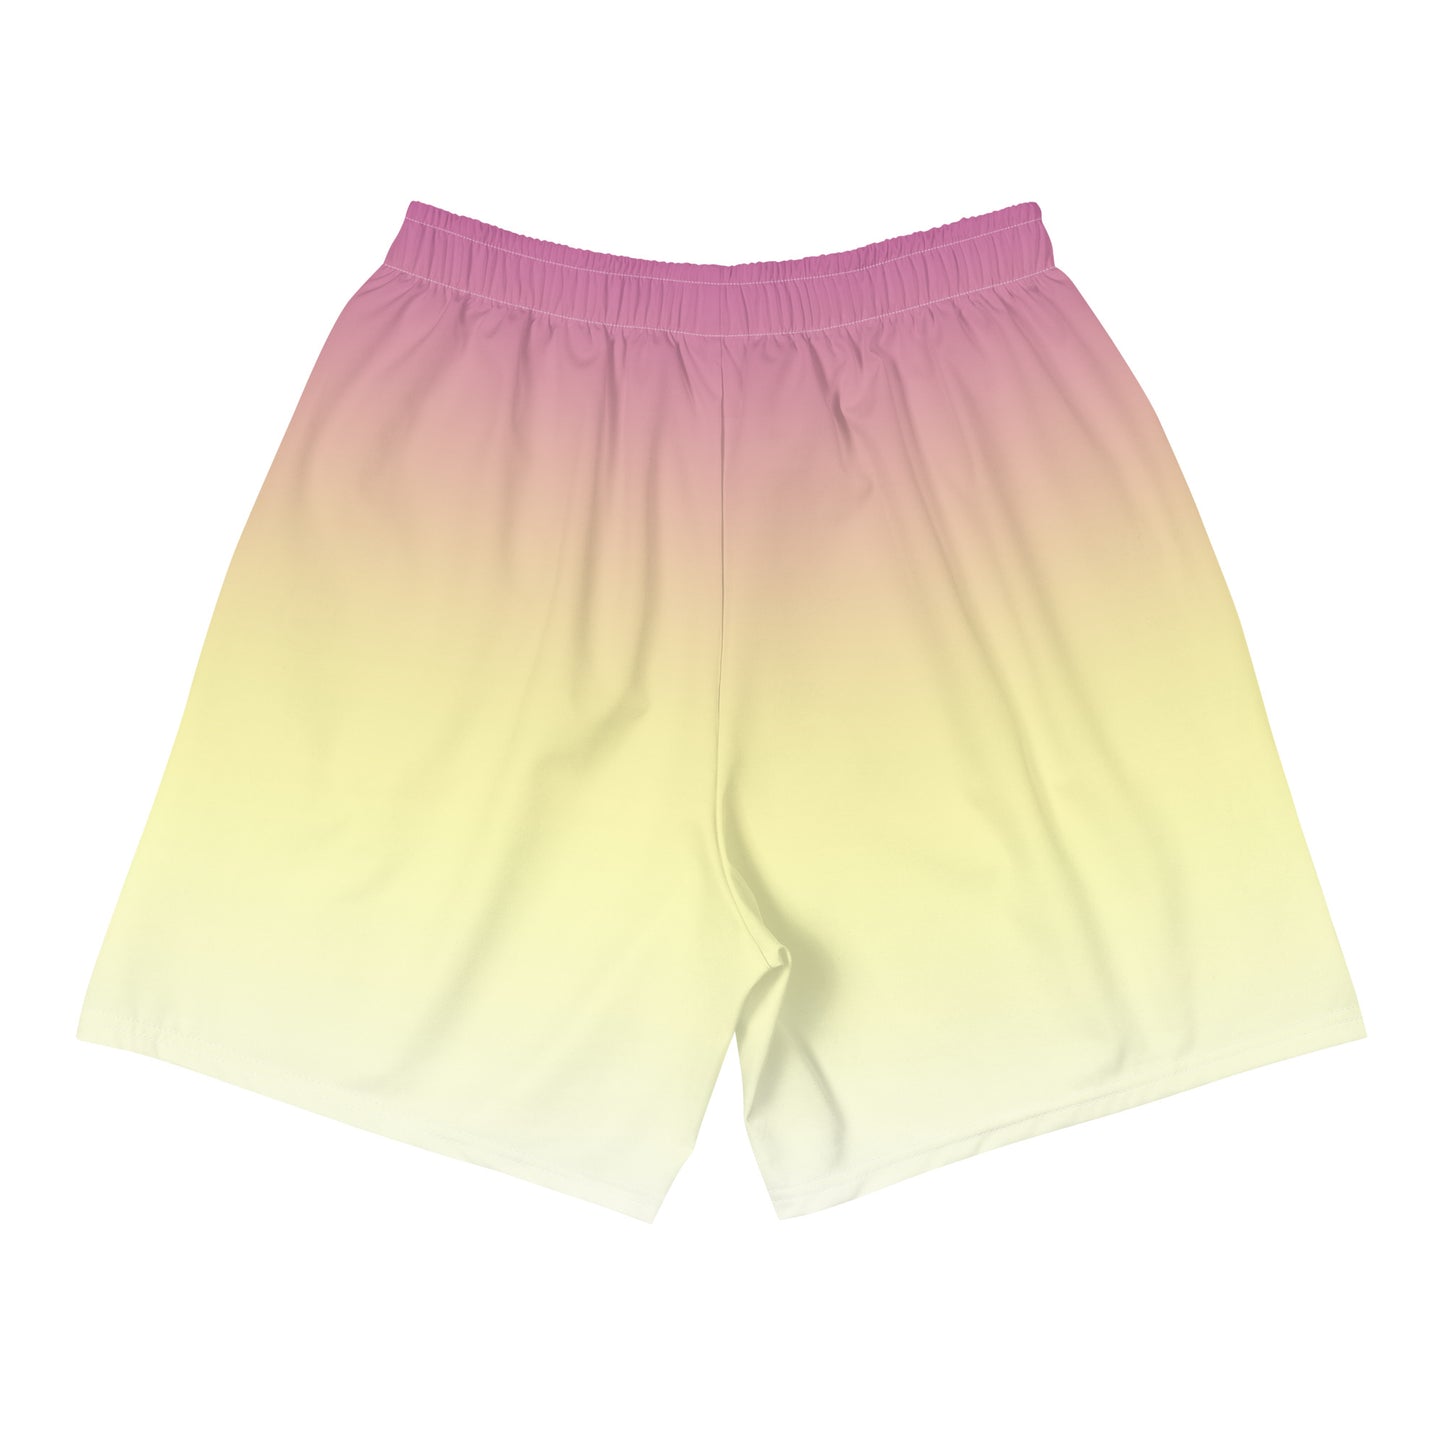 Tiny Bimbo Athletic Shorts (Long)